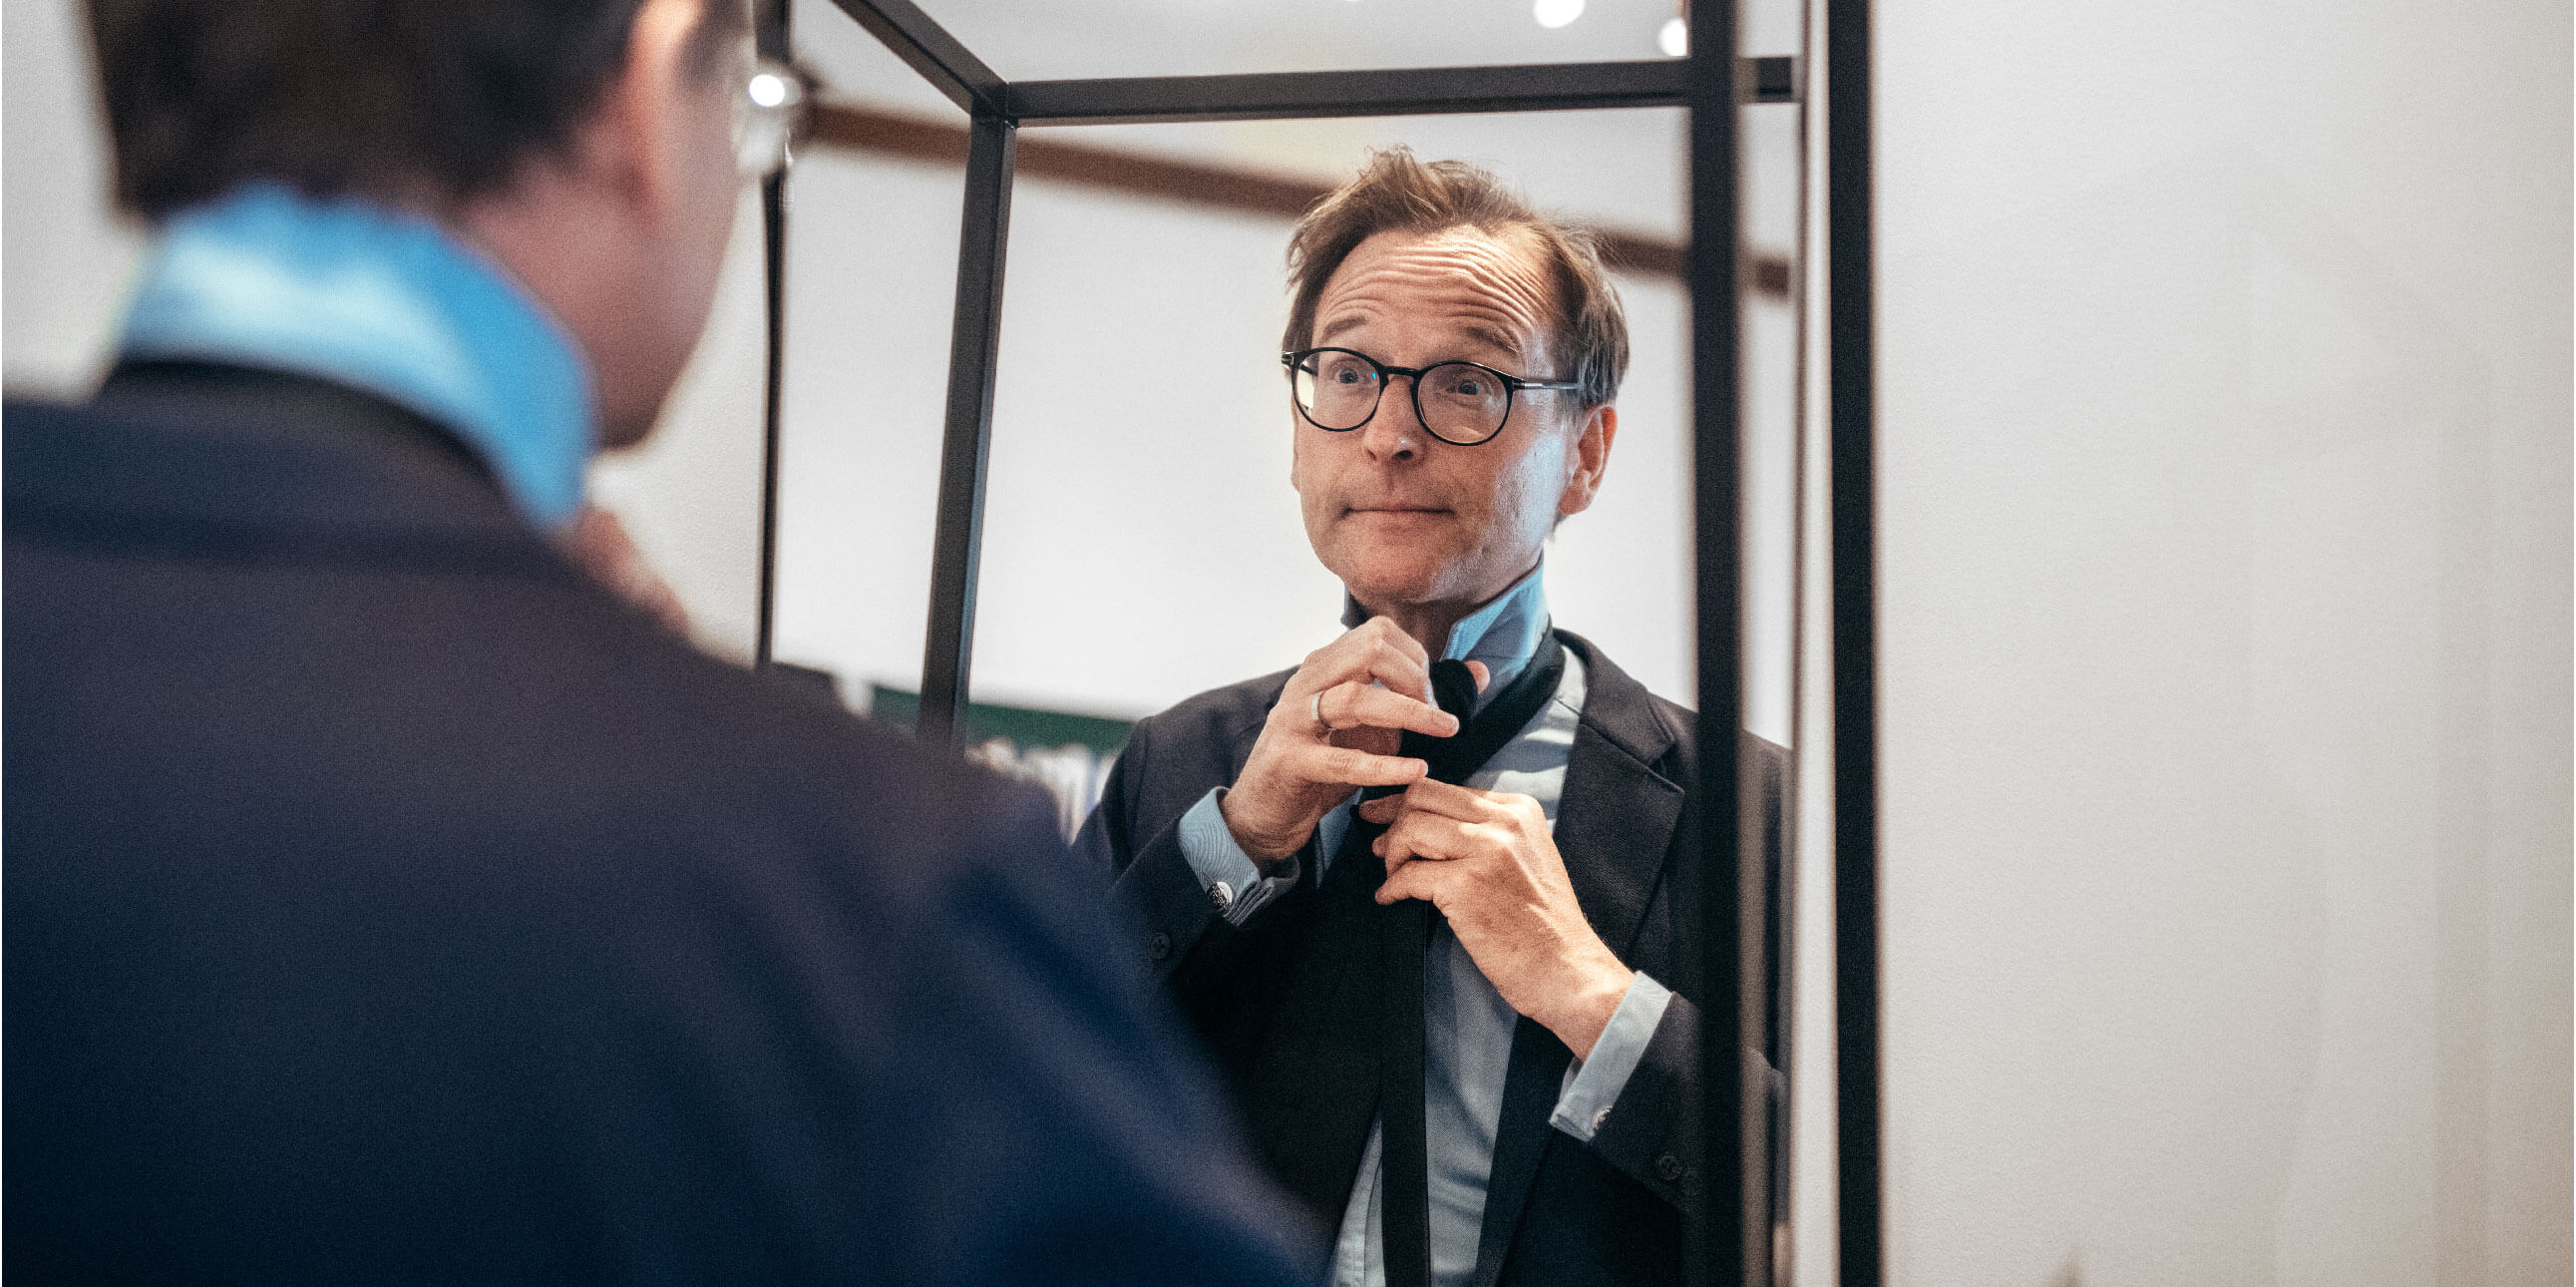 Lars Strannegård knyter sin slips framför en spegel.